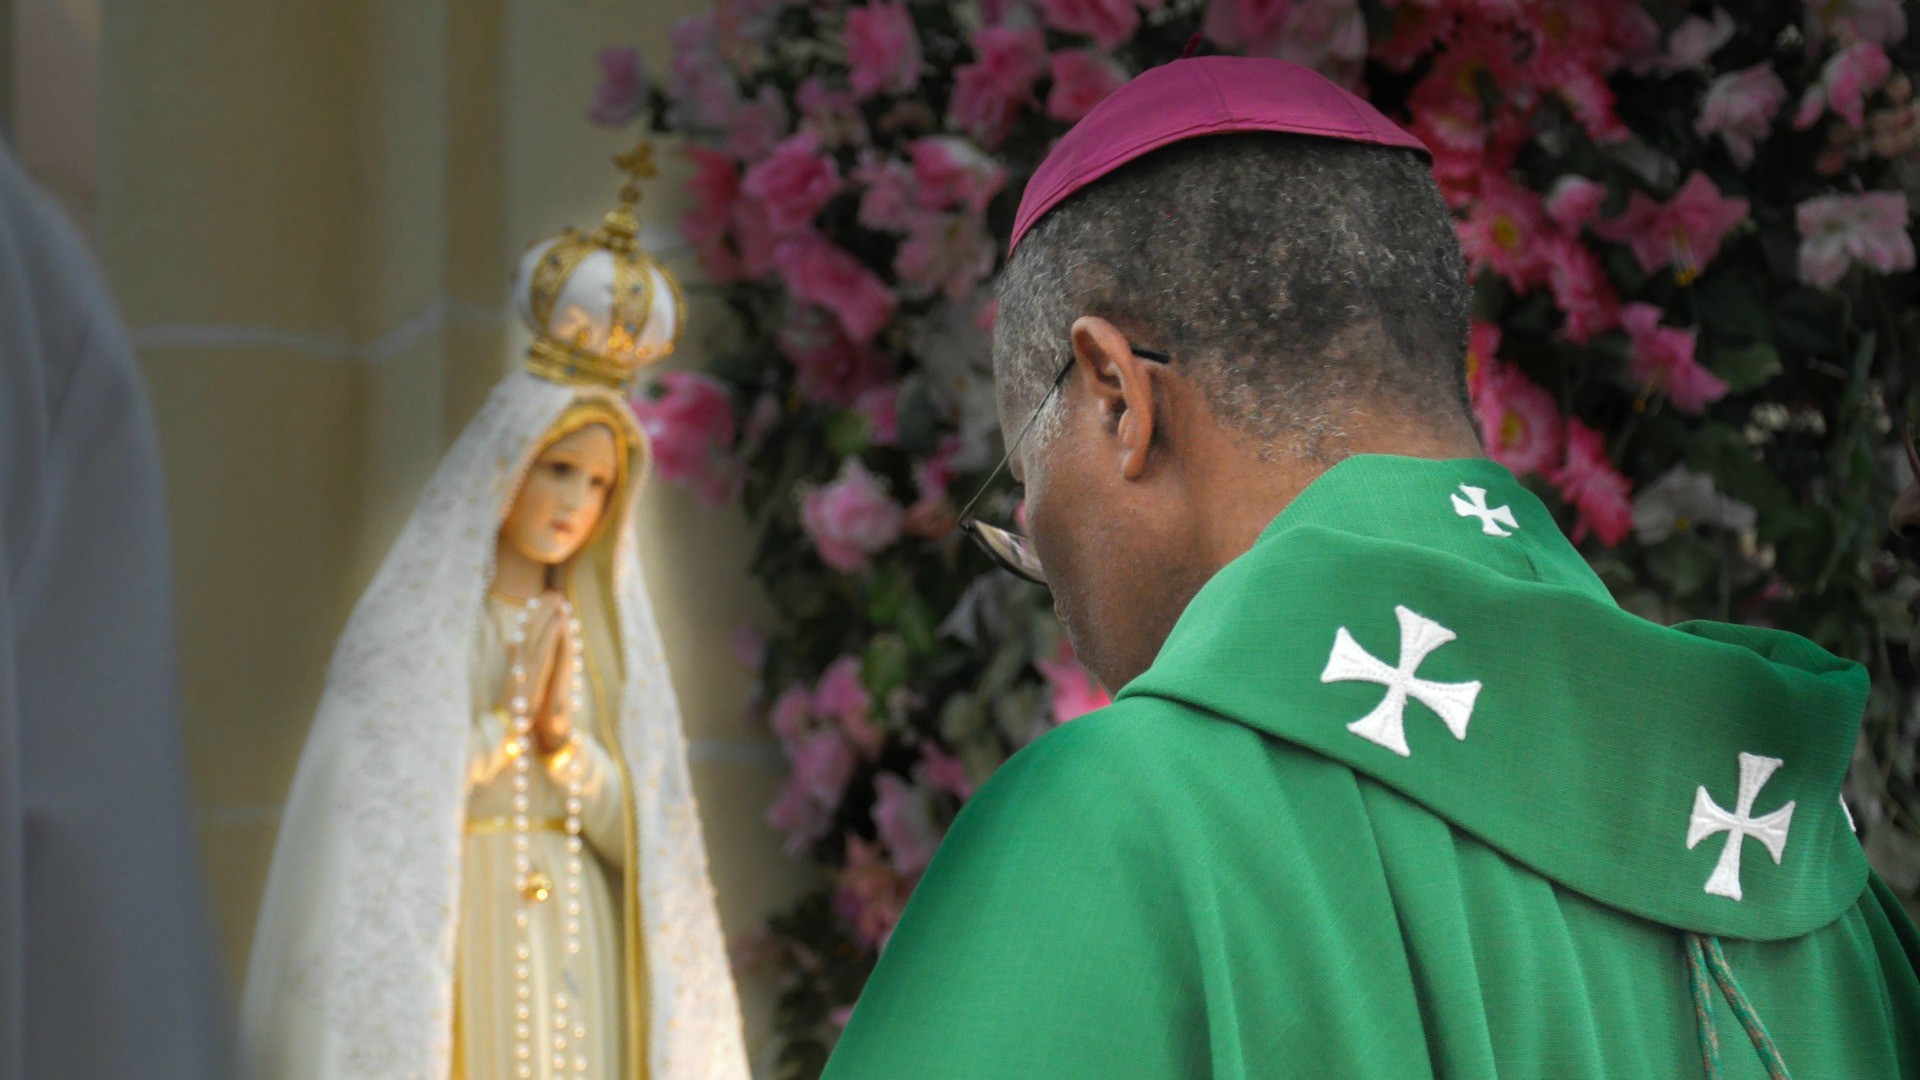 Tous les secrets de la Vierge de Fatima ont été révélés (Photo:Pilgrim Fatima/Flickr/CC BY-SA 2.0)